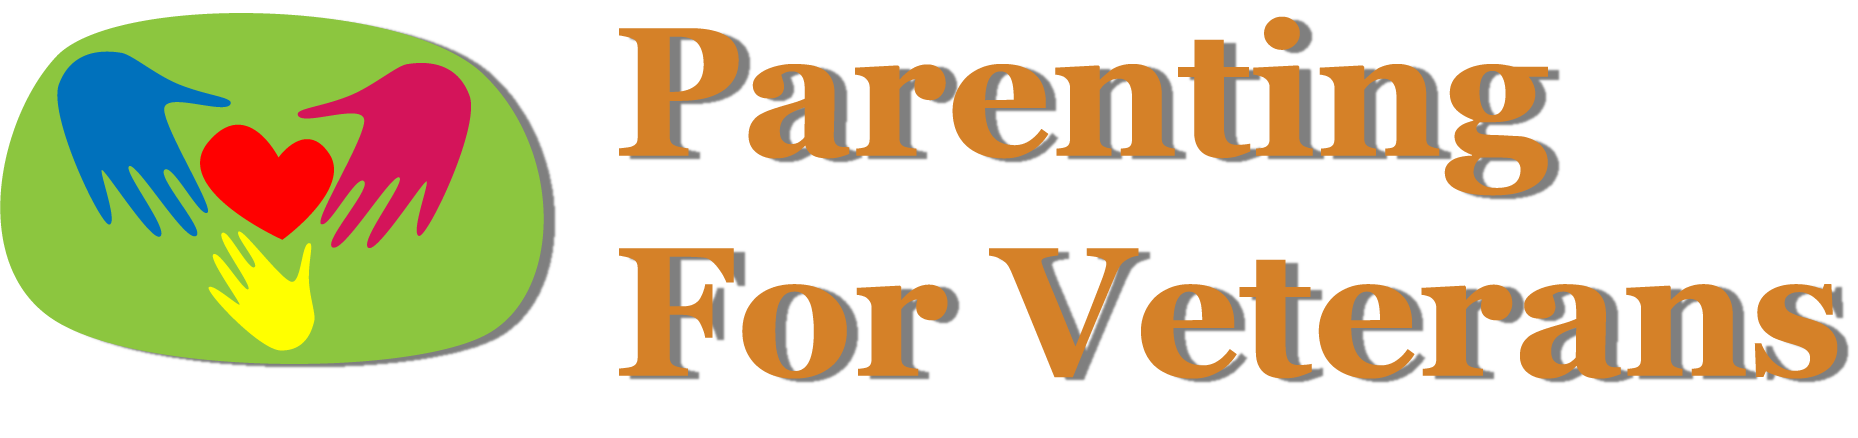 Parenting for Veterans Logo